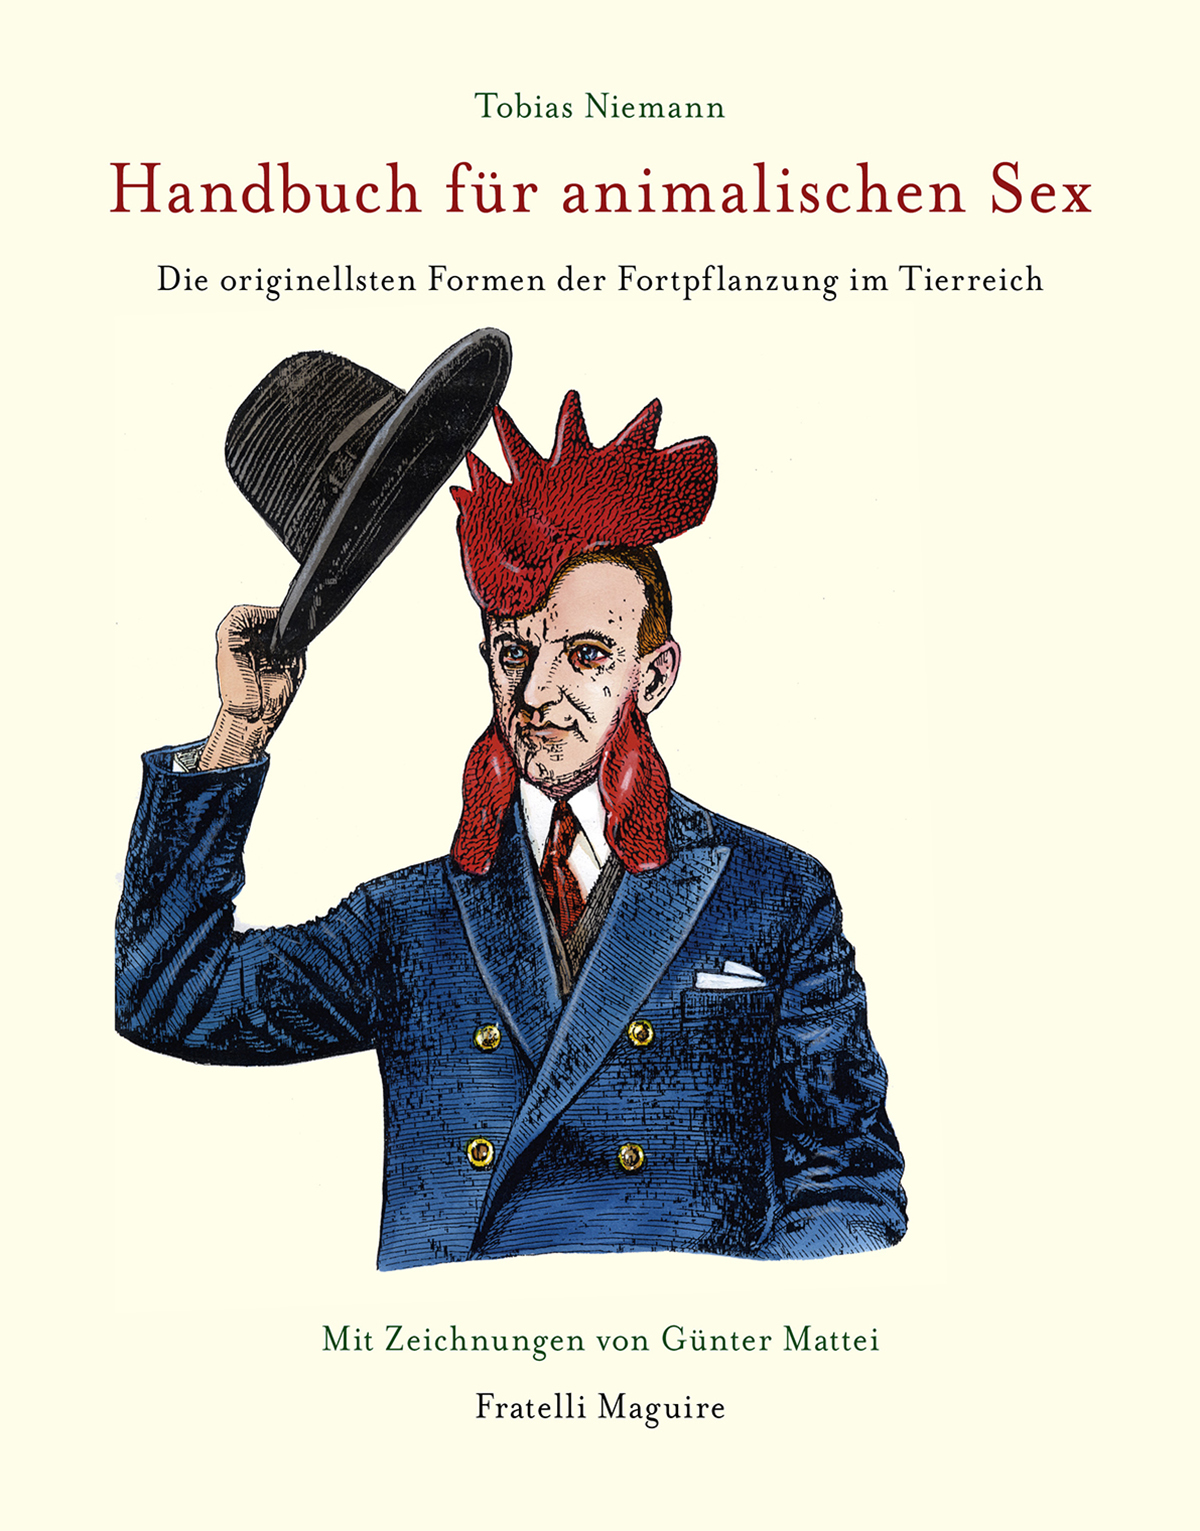 Handbuch für animalischen Sex